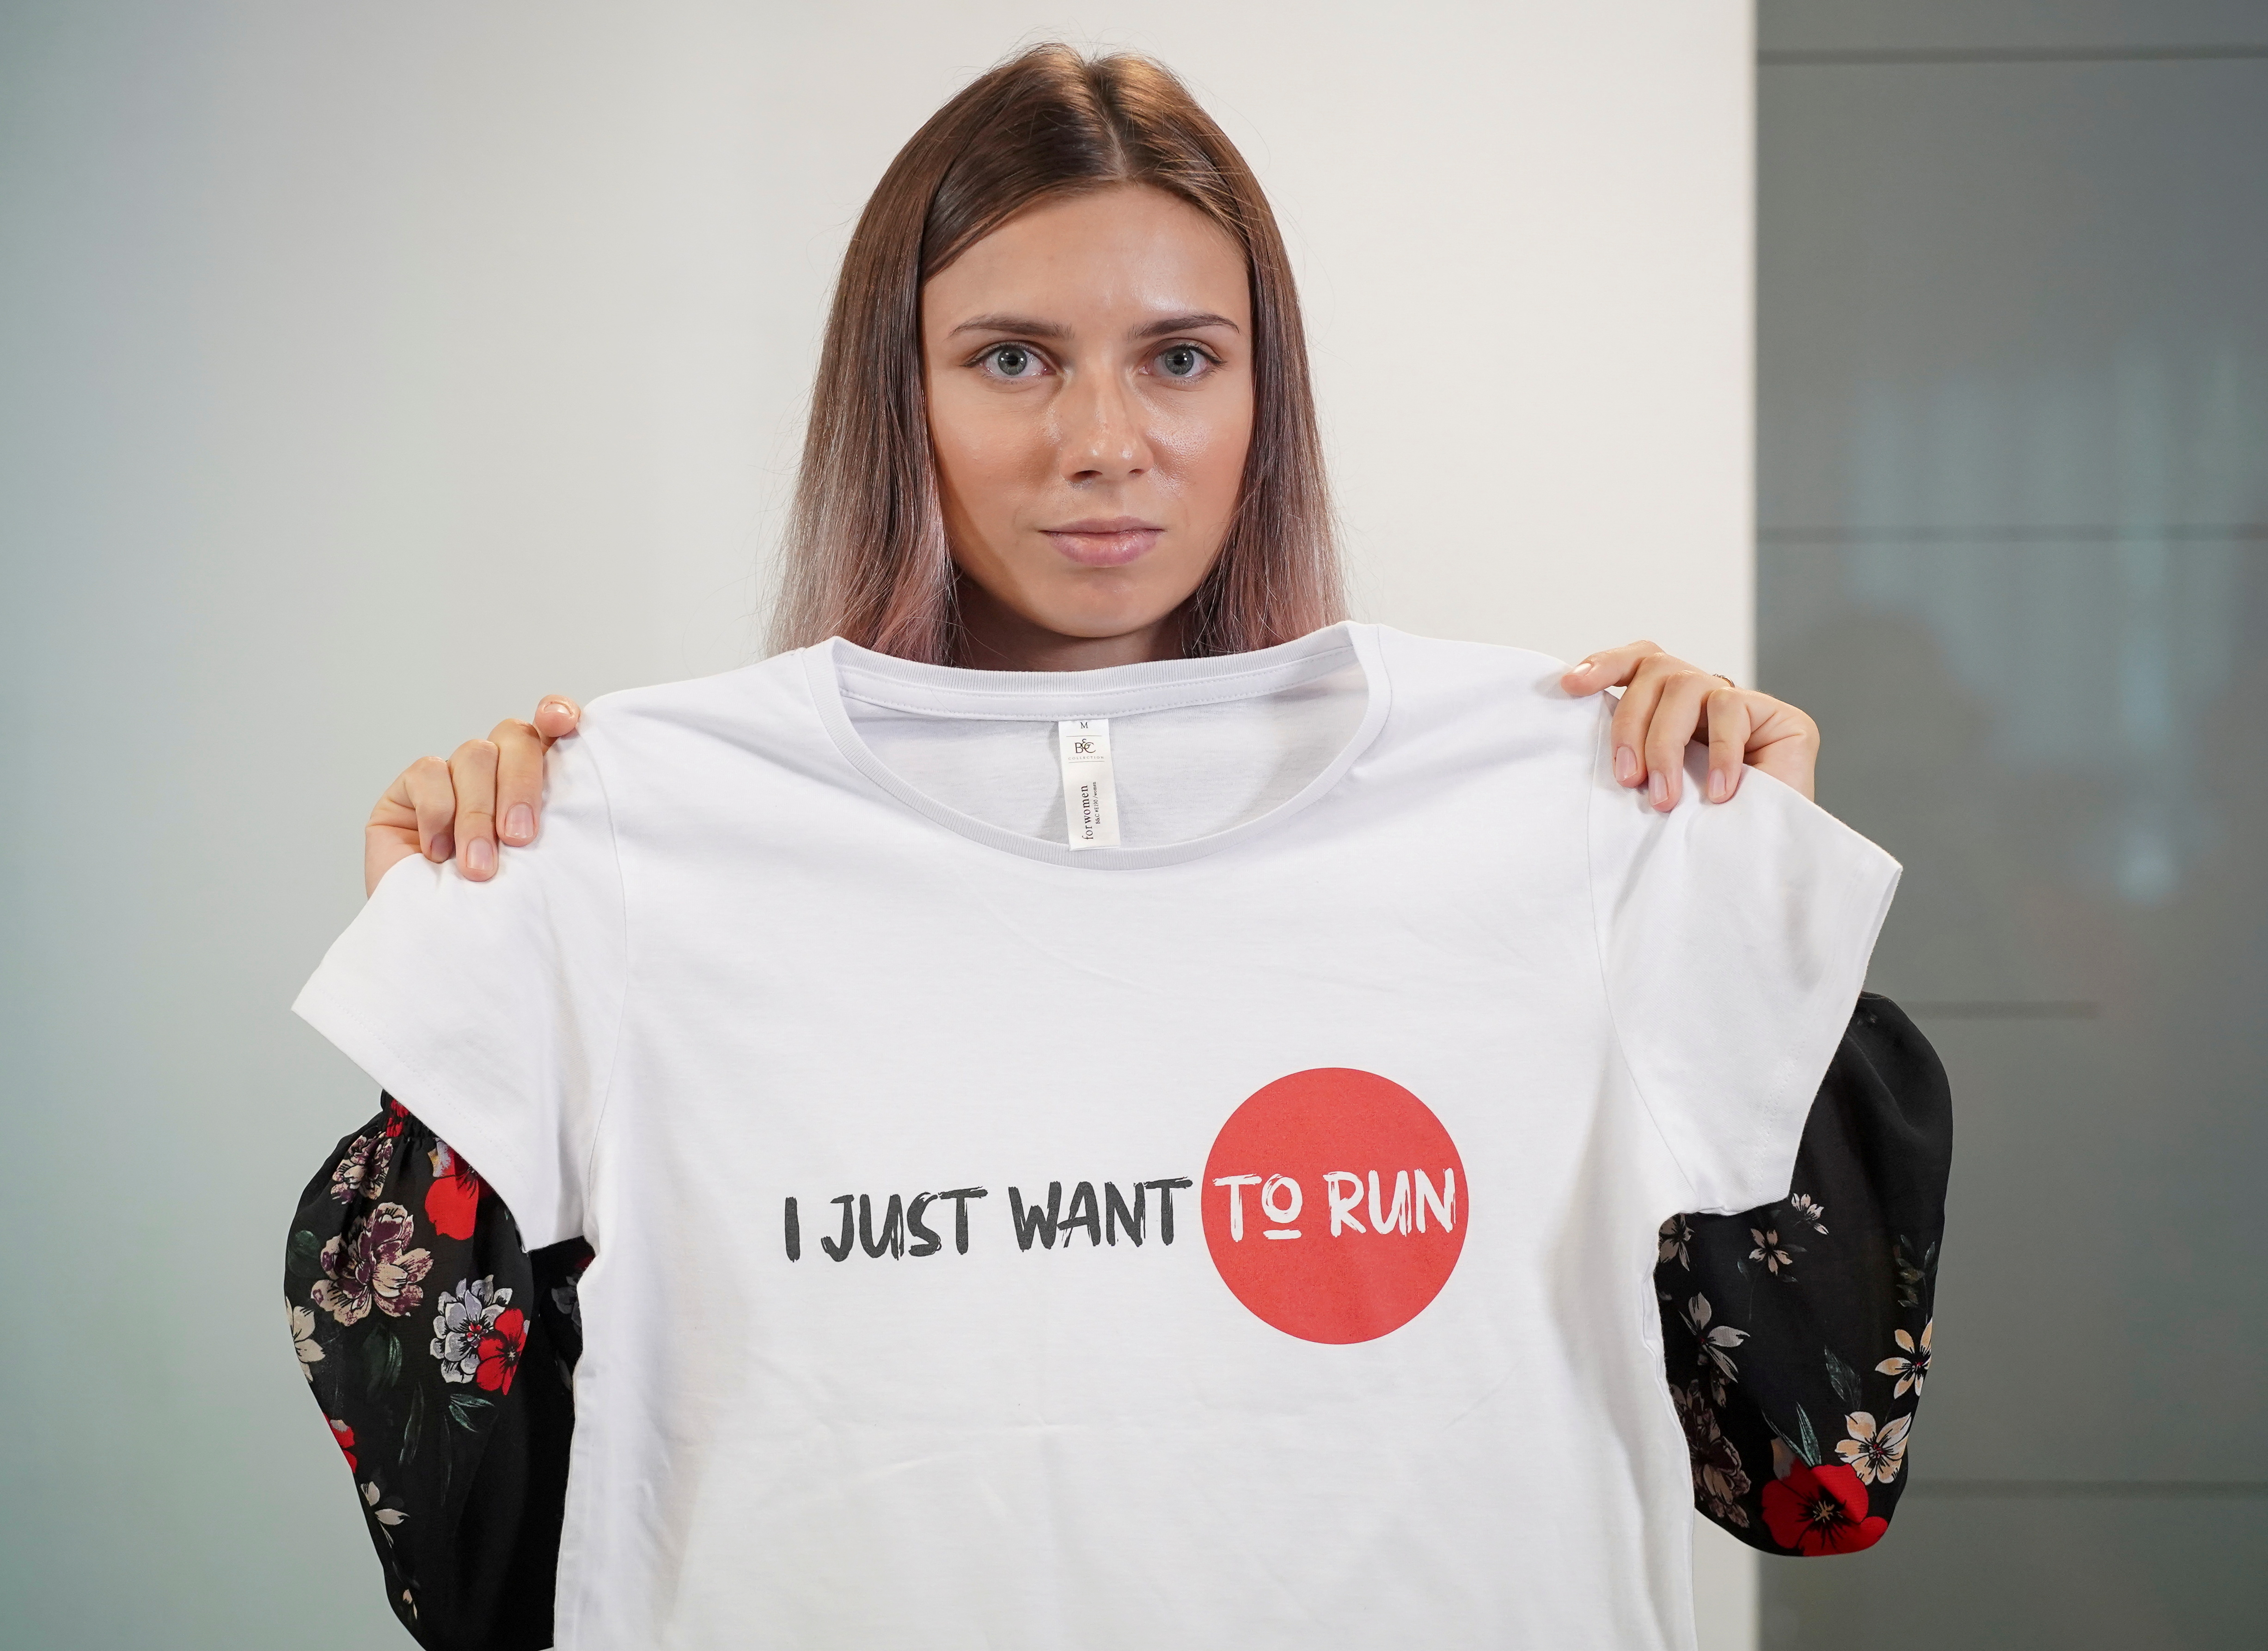 La velocista bielorrusa Krystsina Tsimanouskaya, que abandonó los Juegos Olímpicos de Tokio y buscó asilo en Polonia, sostiene una camiseta en una rueda de prensa en Varsovia (Foto: REUTERS)